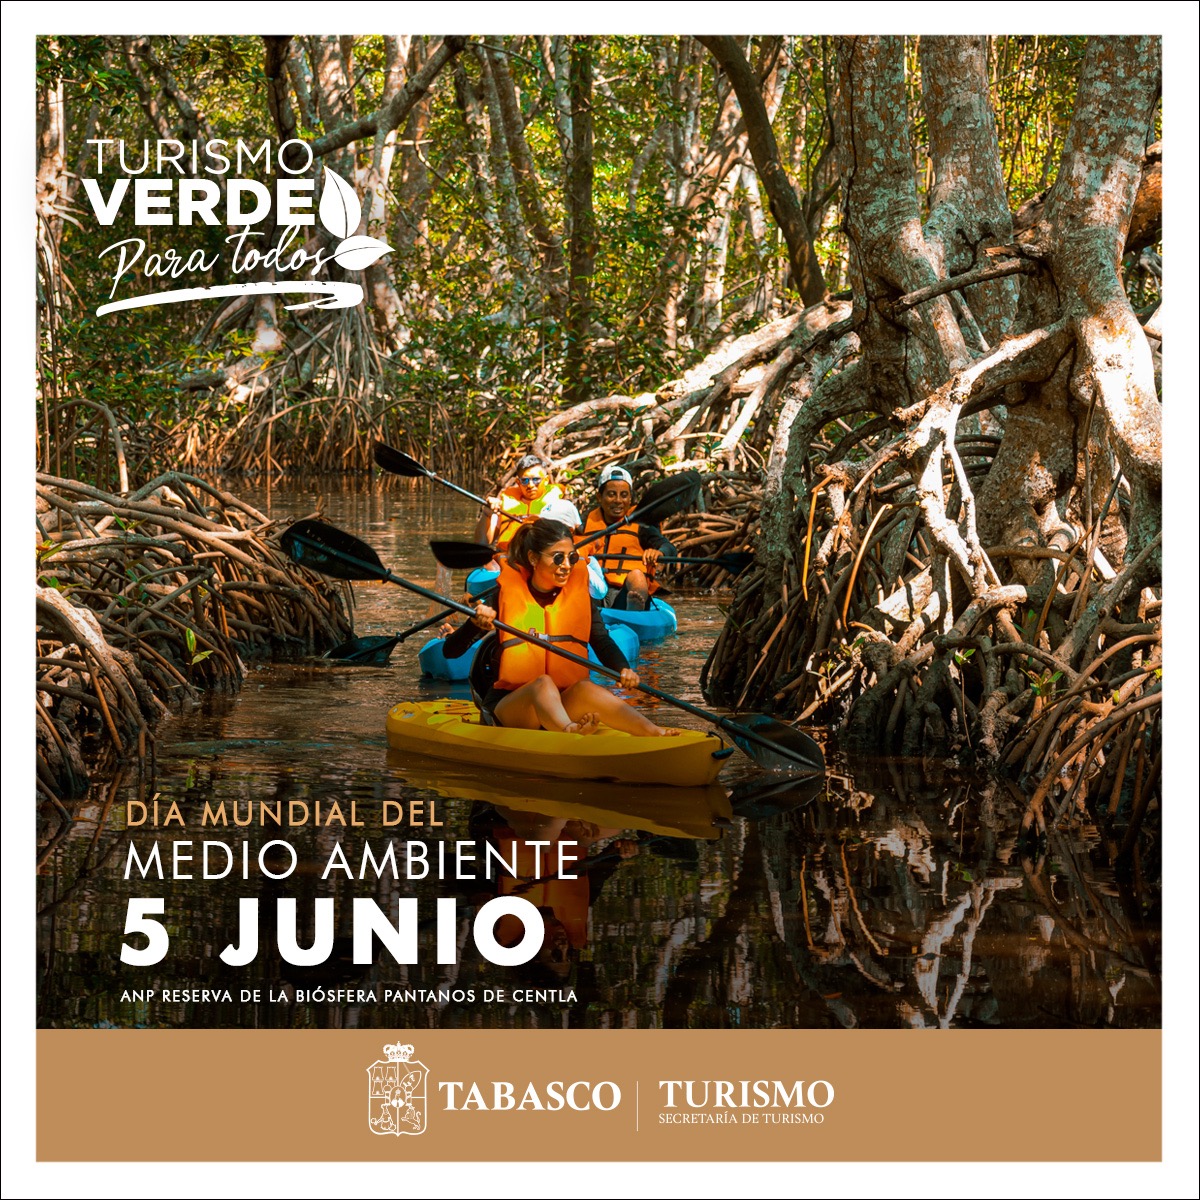 5 de junio | #DíaMundialDelMedioAmbiente 

#Tabasco cuenta con 15 #ÁreasNaturalesProtegidas, destacando la Reserva de la Biósfera Pantanos de #Centla, Boca del Cerro en #Tenosique y el Parque Estatal Sierra en #Teapa y #Tacotalpa 

#TabascoMemorable #ExperienciasMemorables